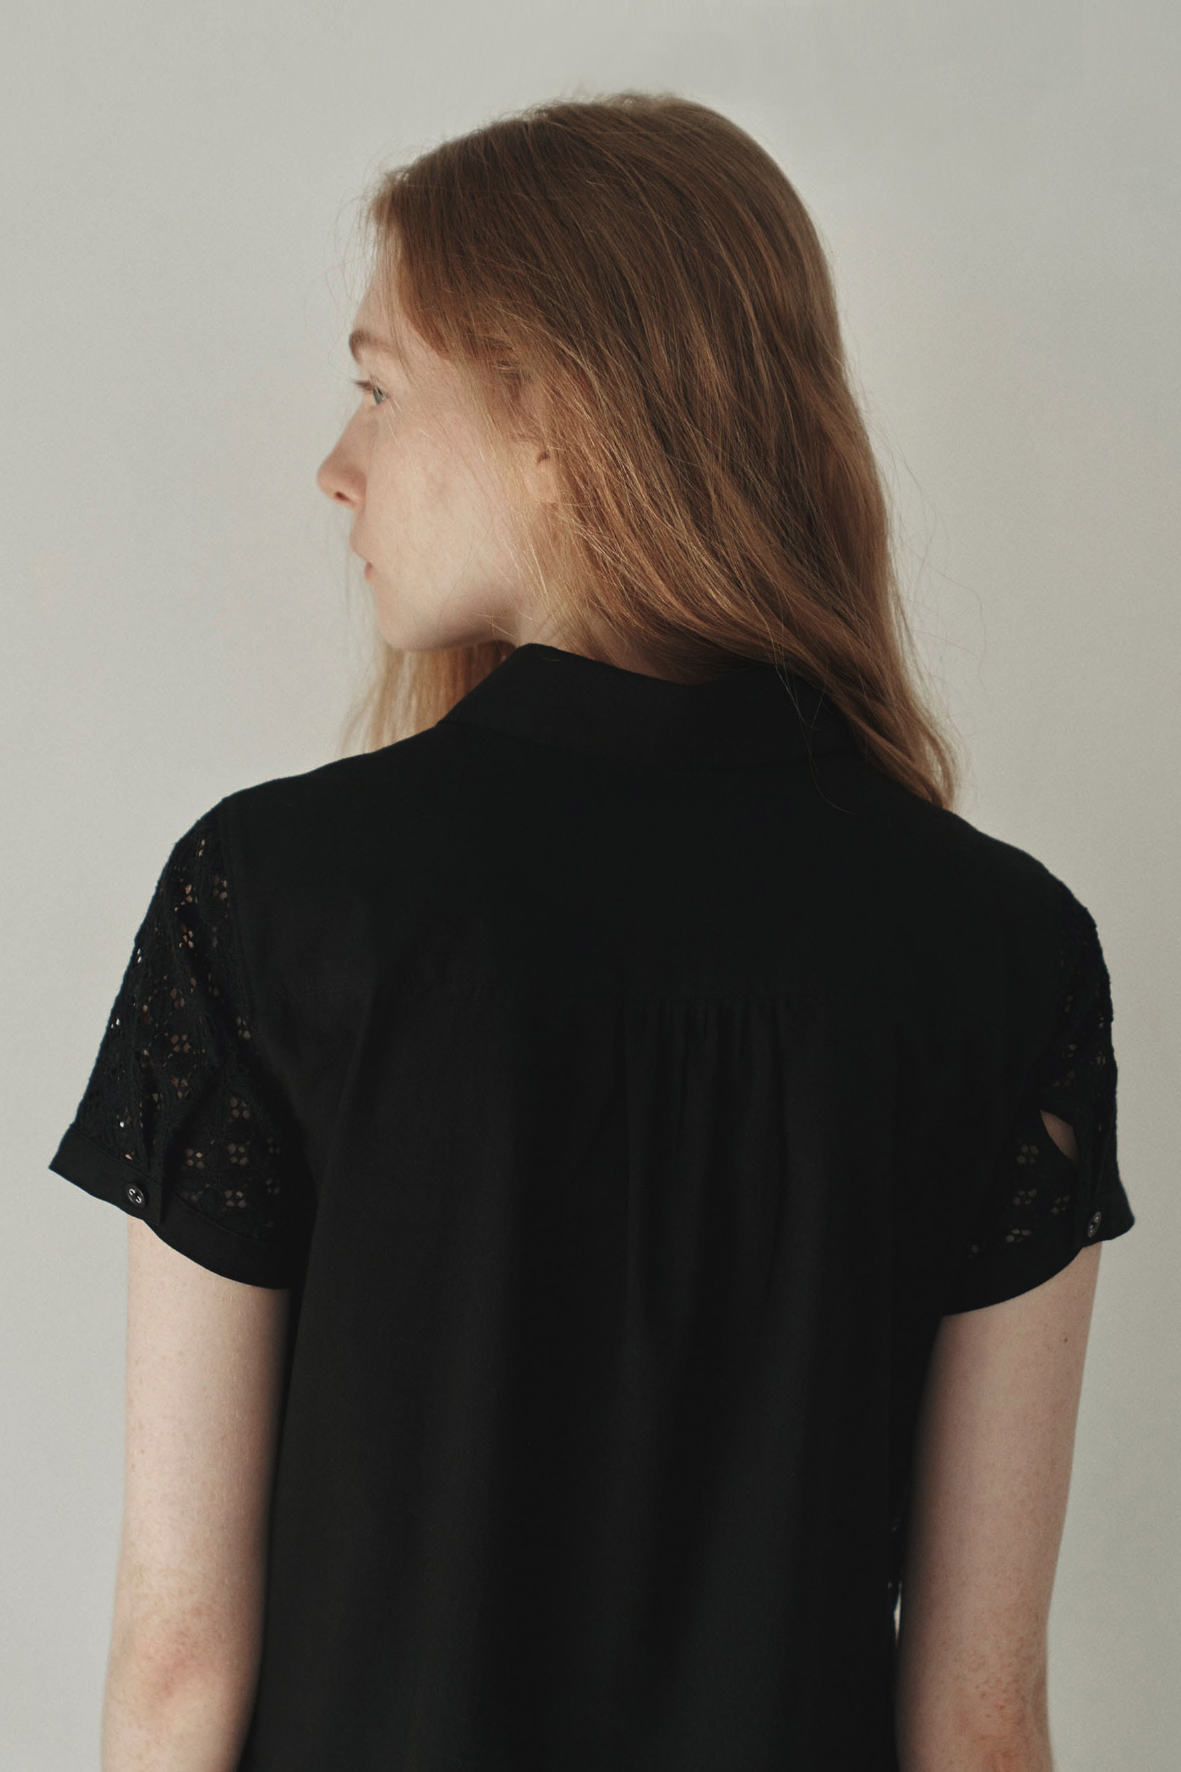 [SLOCO] Cotton lace shirt, black